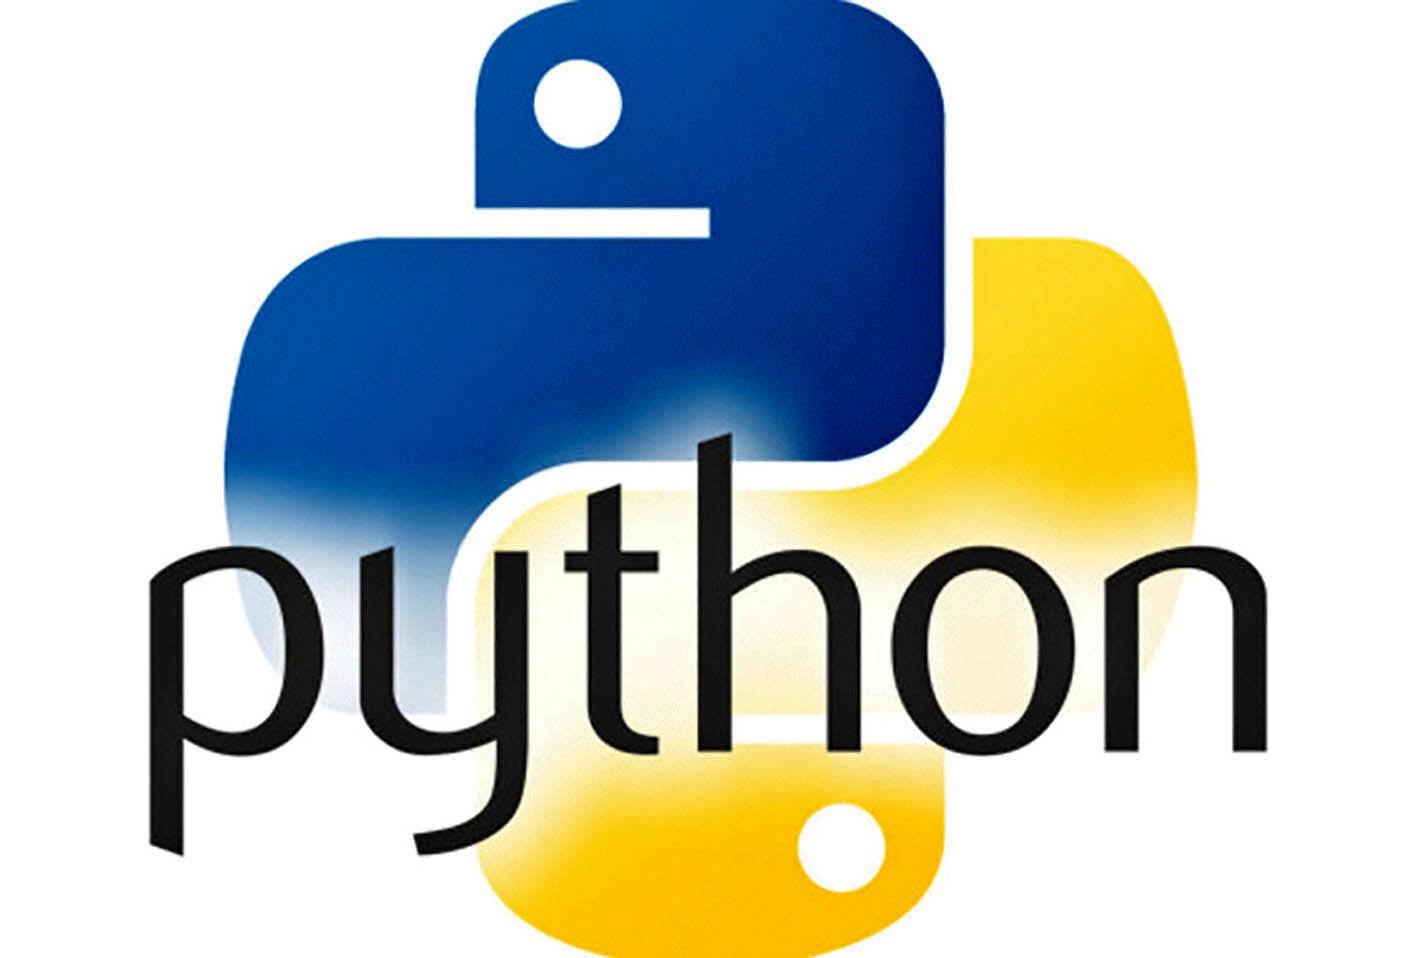 Логотип языка питон. Язык программирования phuton логотип. Питон язык программирования. Python программирование логотип. Пион язык программирования.